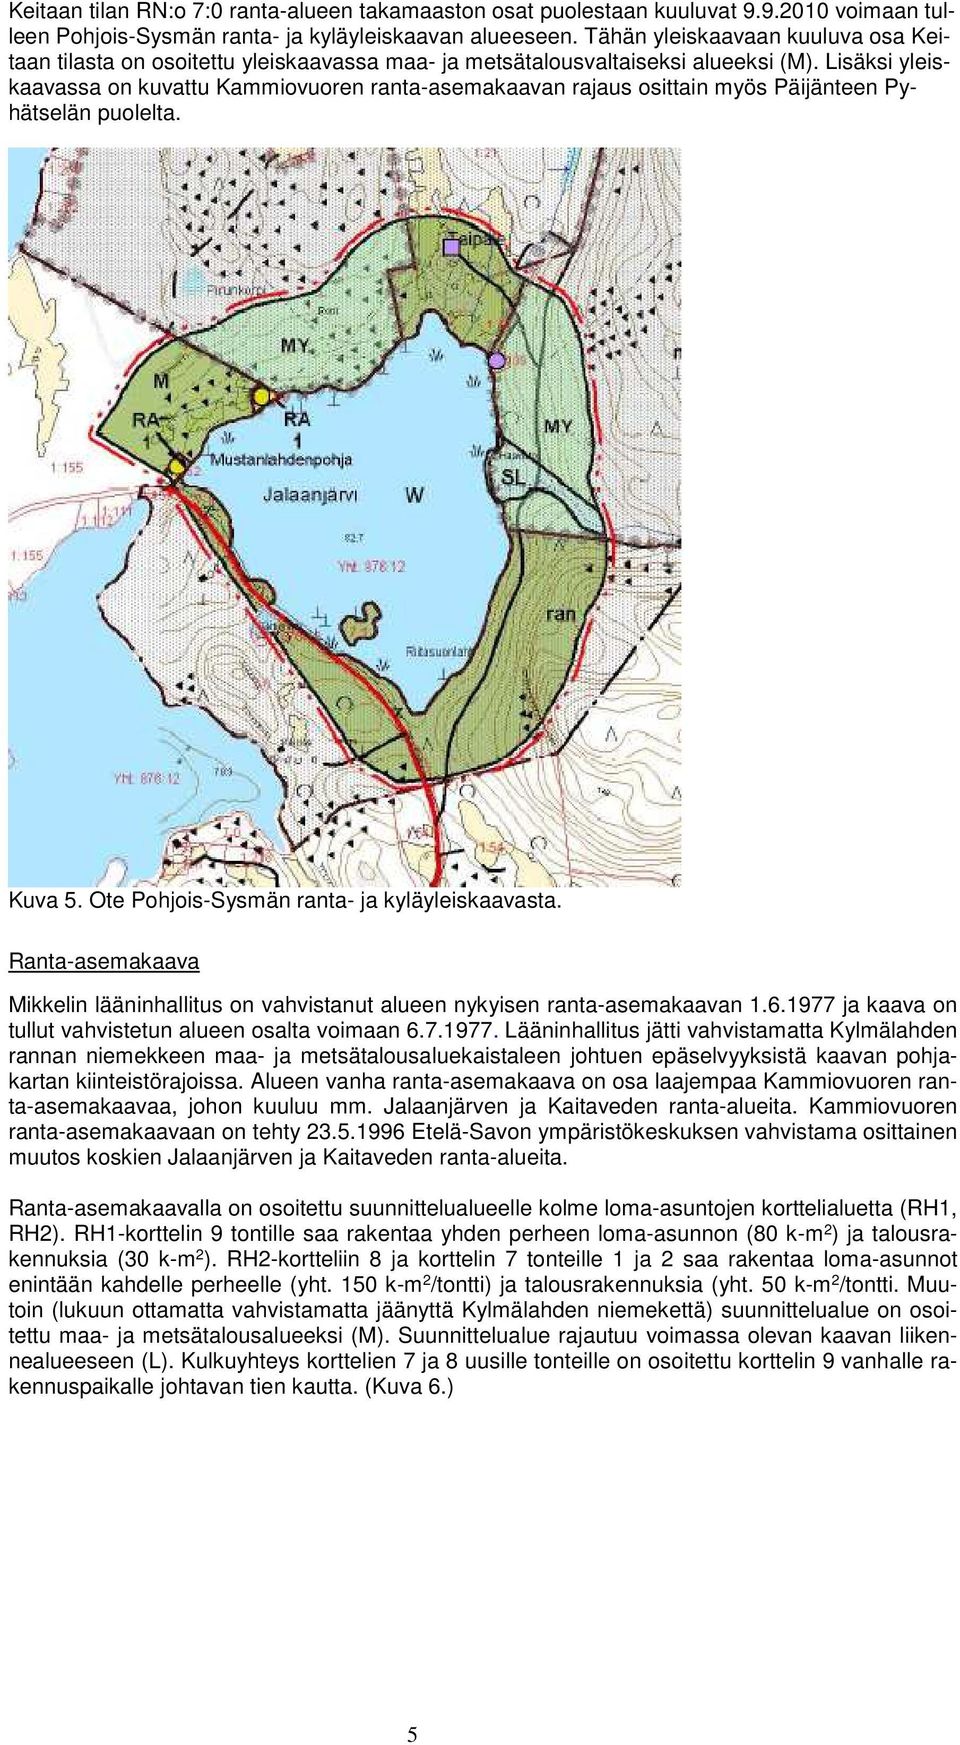 Lisäksi yleiskaavassa on kuvattu Kammiovuoren ranta-asemakaavan rajaus osittain myös Päijänteen Pyhätselän puolelta. Kuva 5. Ote Pohjois-Sysmän ranta- ja kyläyleiskaavasta.